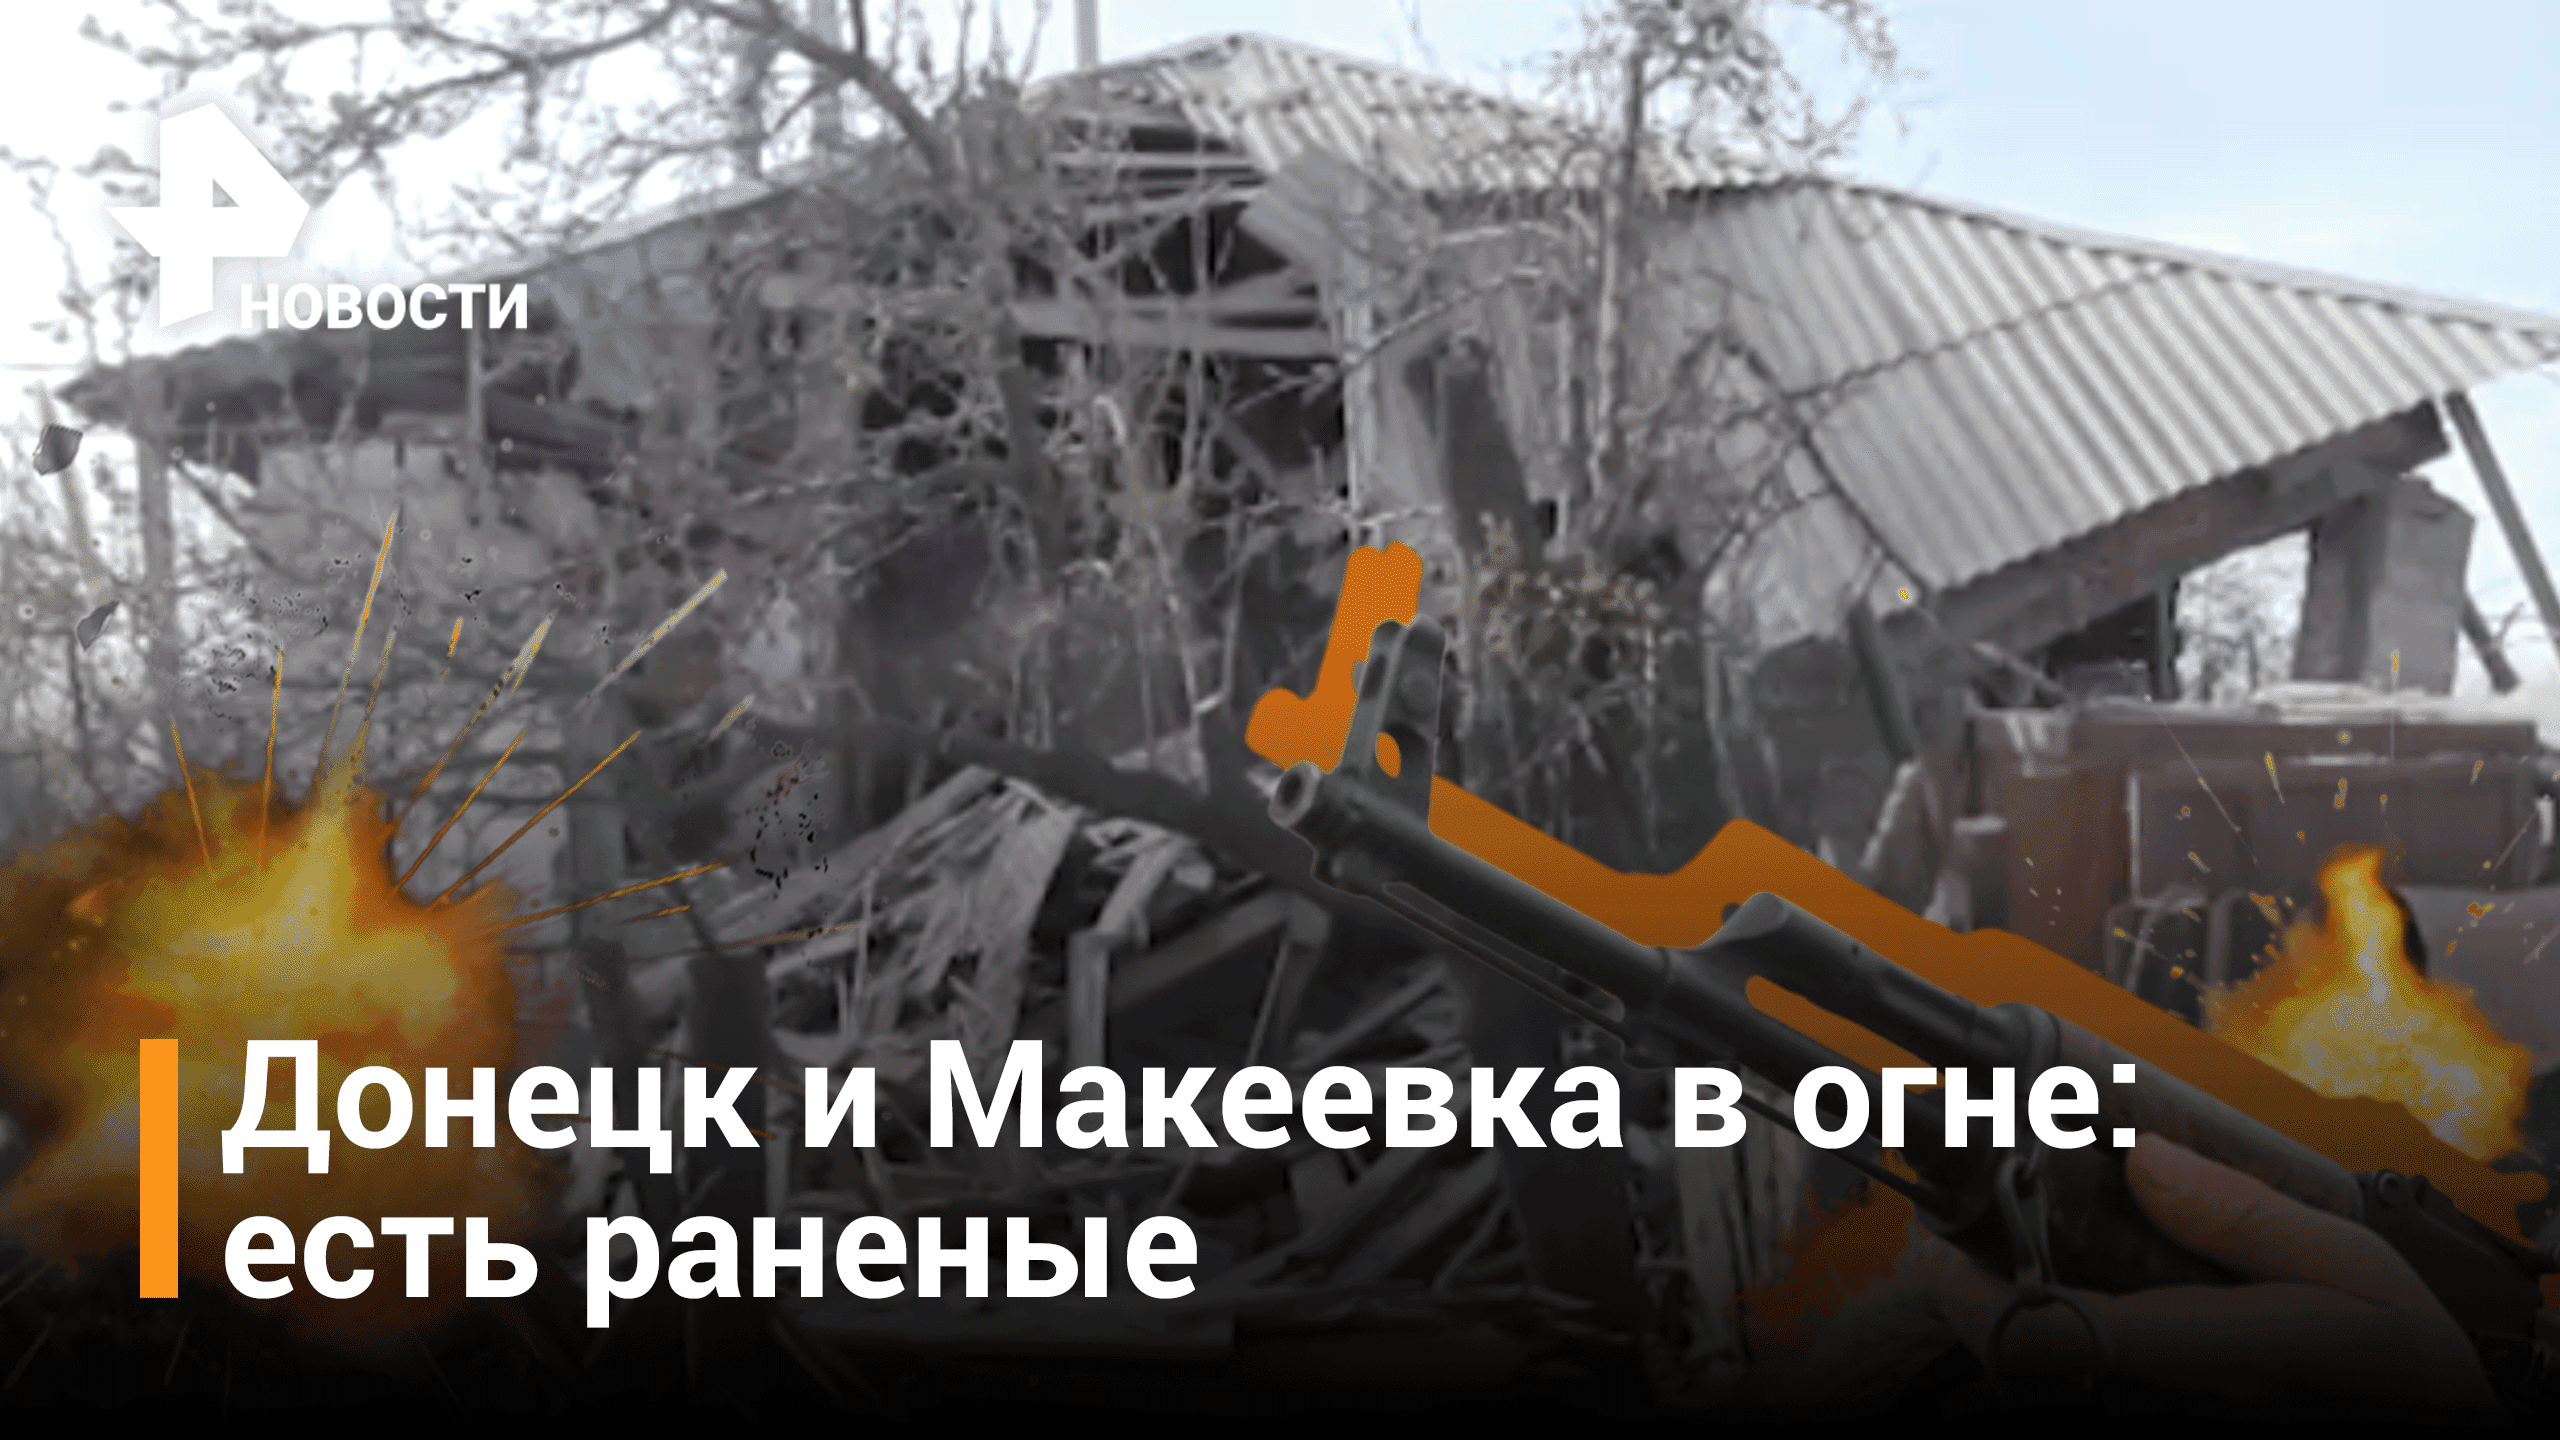 Два мирных жителя пострадали при обстреле Донецка и Макеевки / РЕН Новости